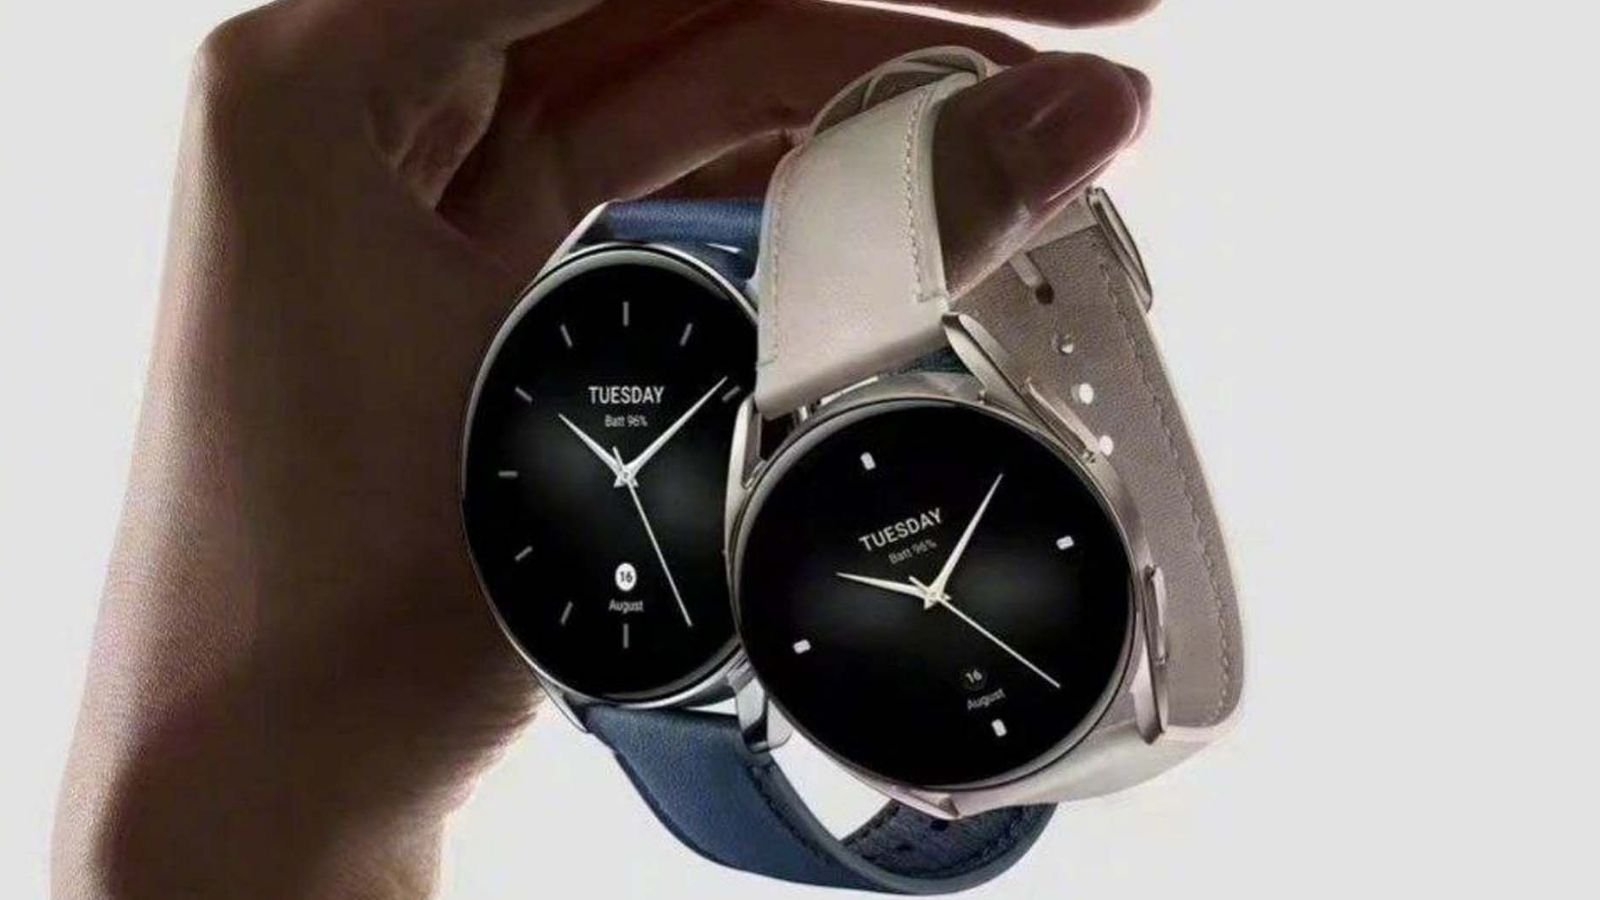 Çinli teknoloji devi olan Xiaomi, bugün yaptığı lansman etkinliğinde Xiaomi Watch 2 isimli yeni akıllı saatini tanıtıma sundu.